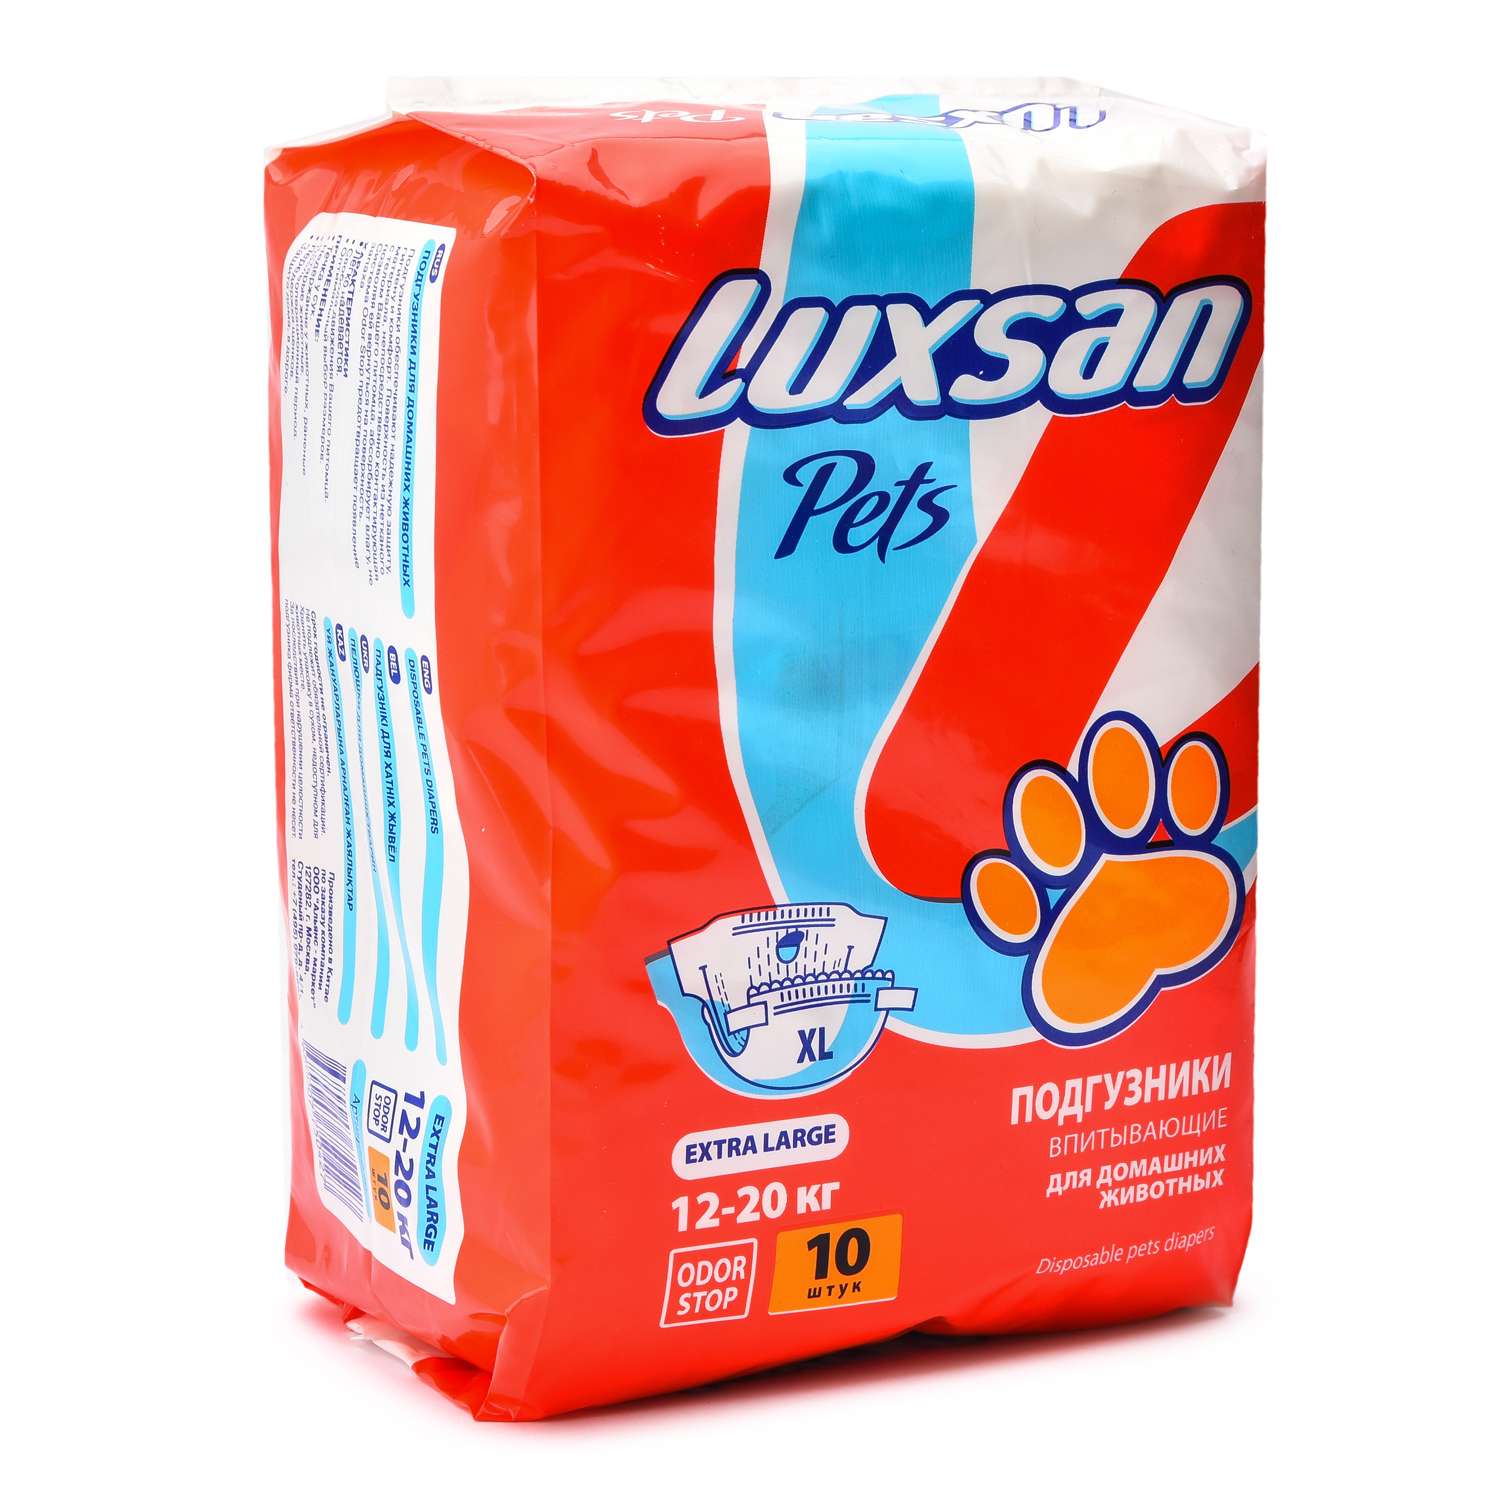 Подгузники для животных Luxsan Pets впитывающие XL 12-20кг 10шт - фото 1